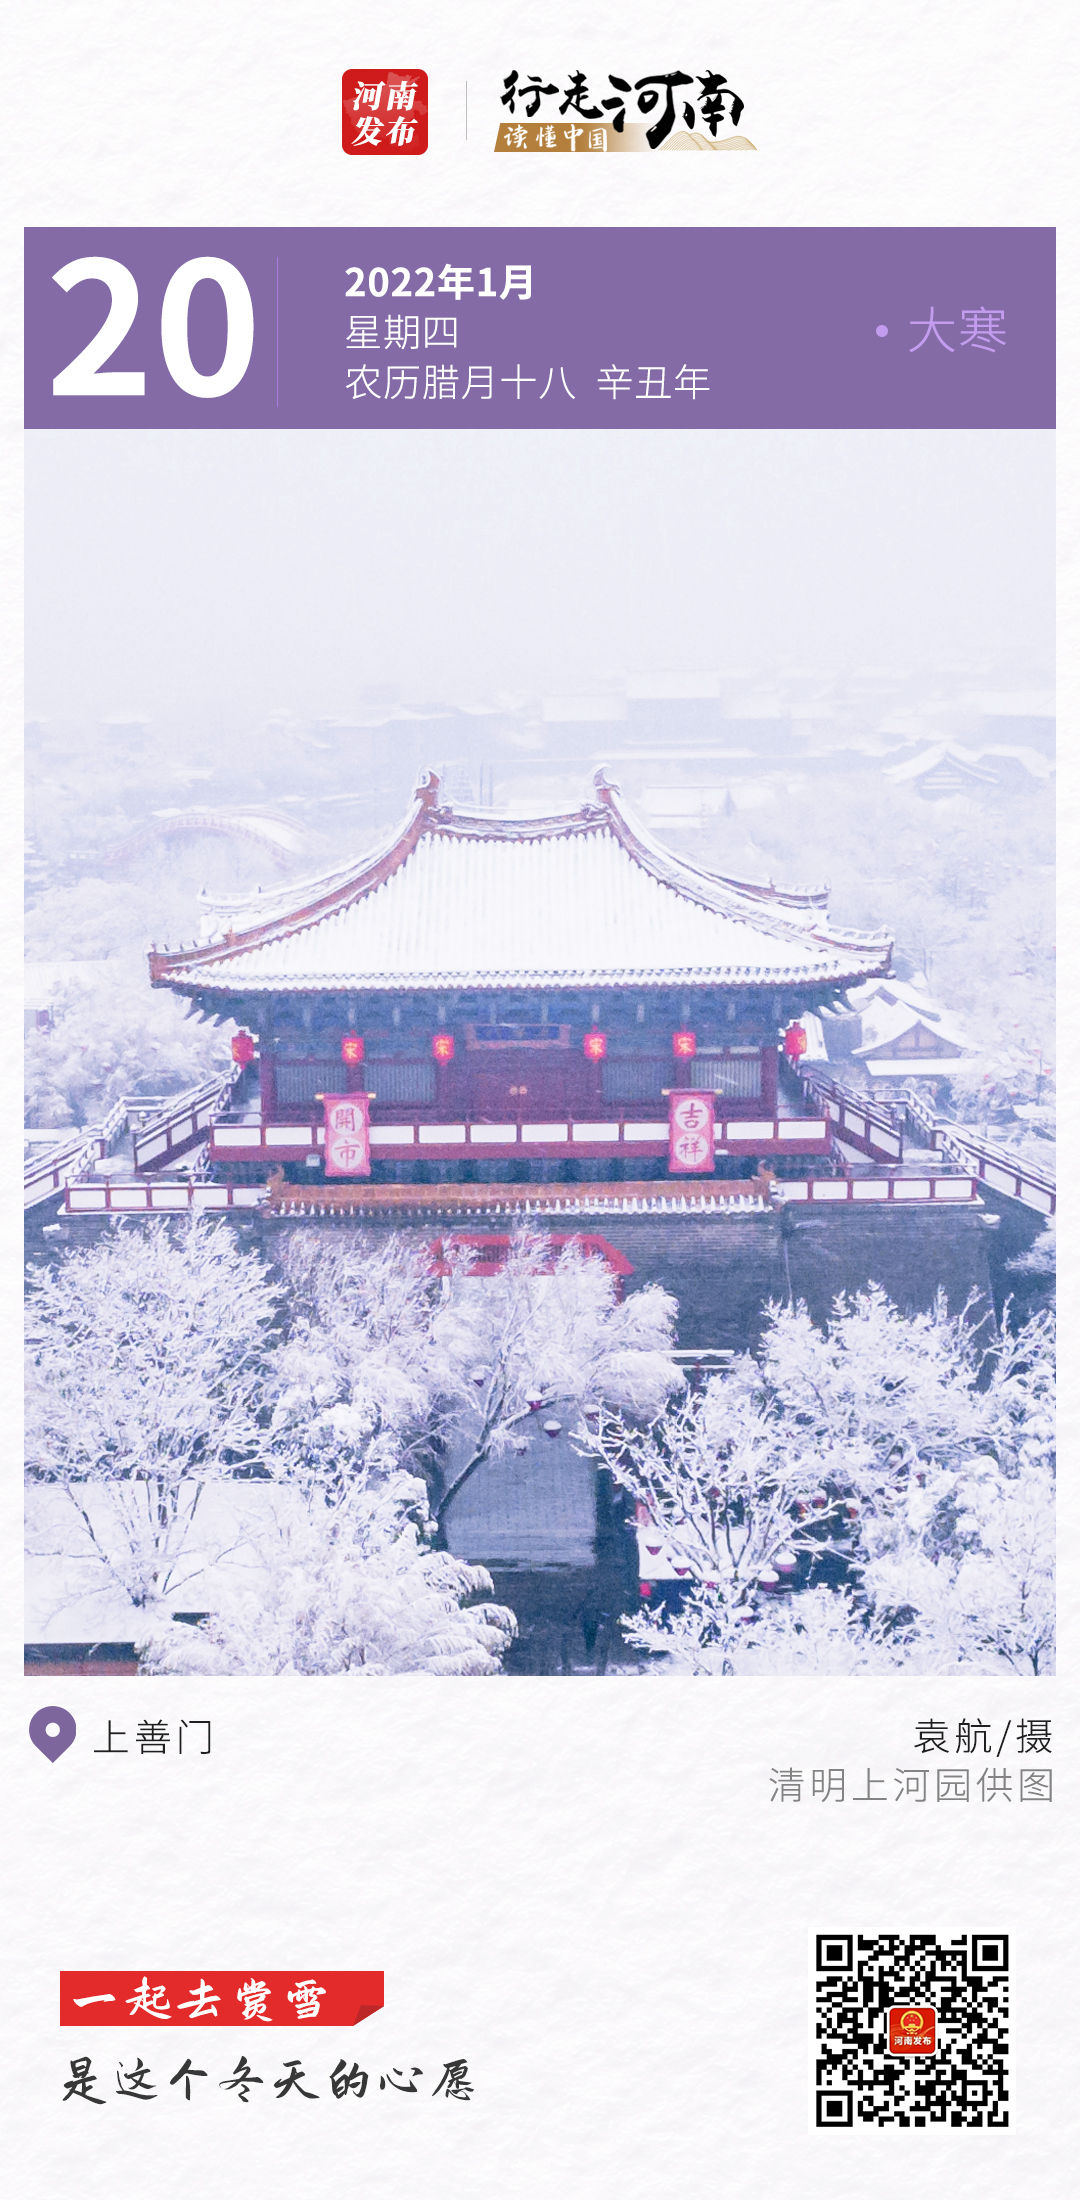 【行走河南 读懂中国】一起去赏雪，是这个冬天的心愿